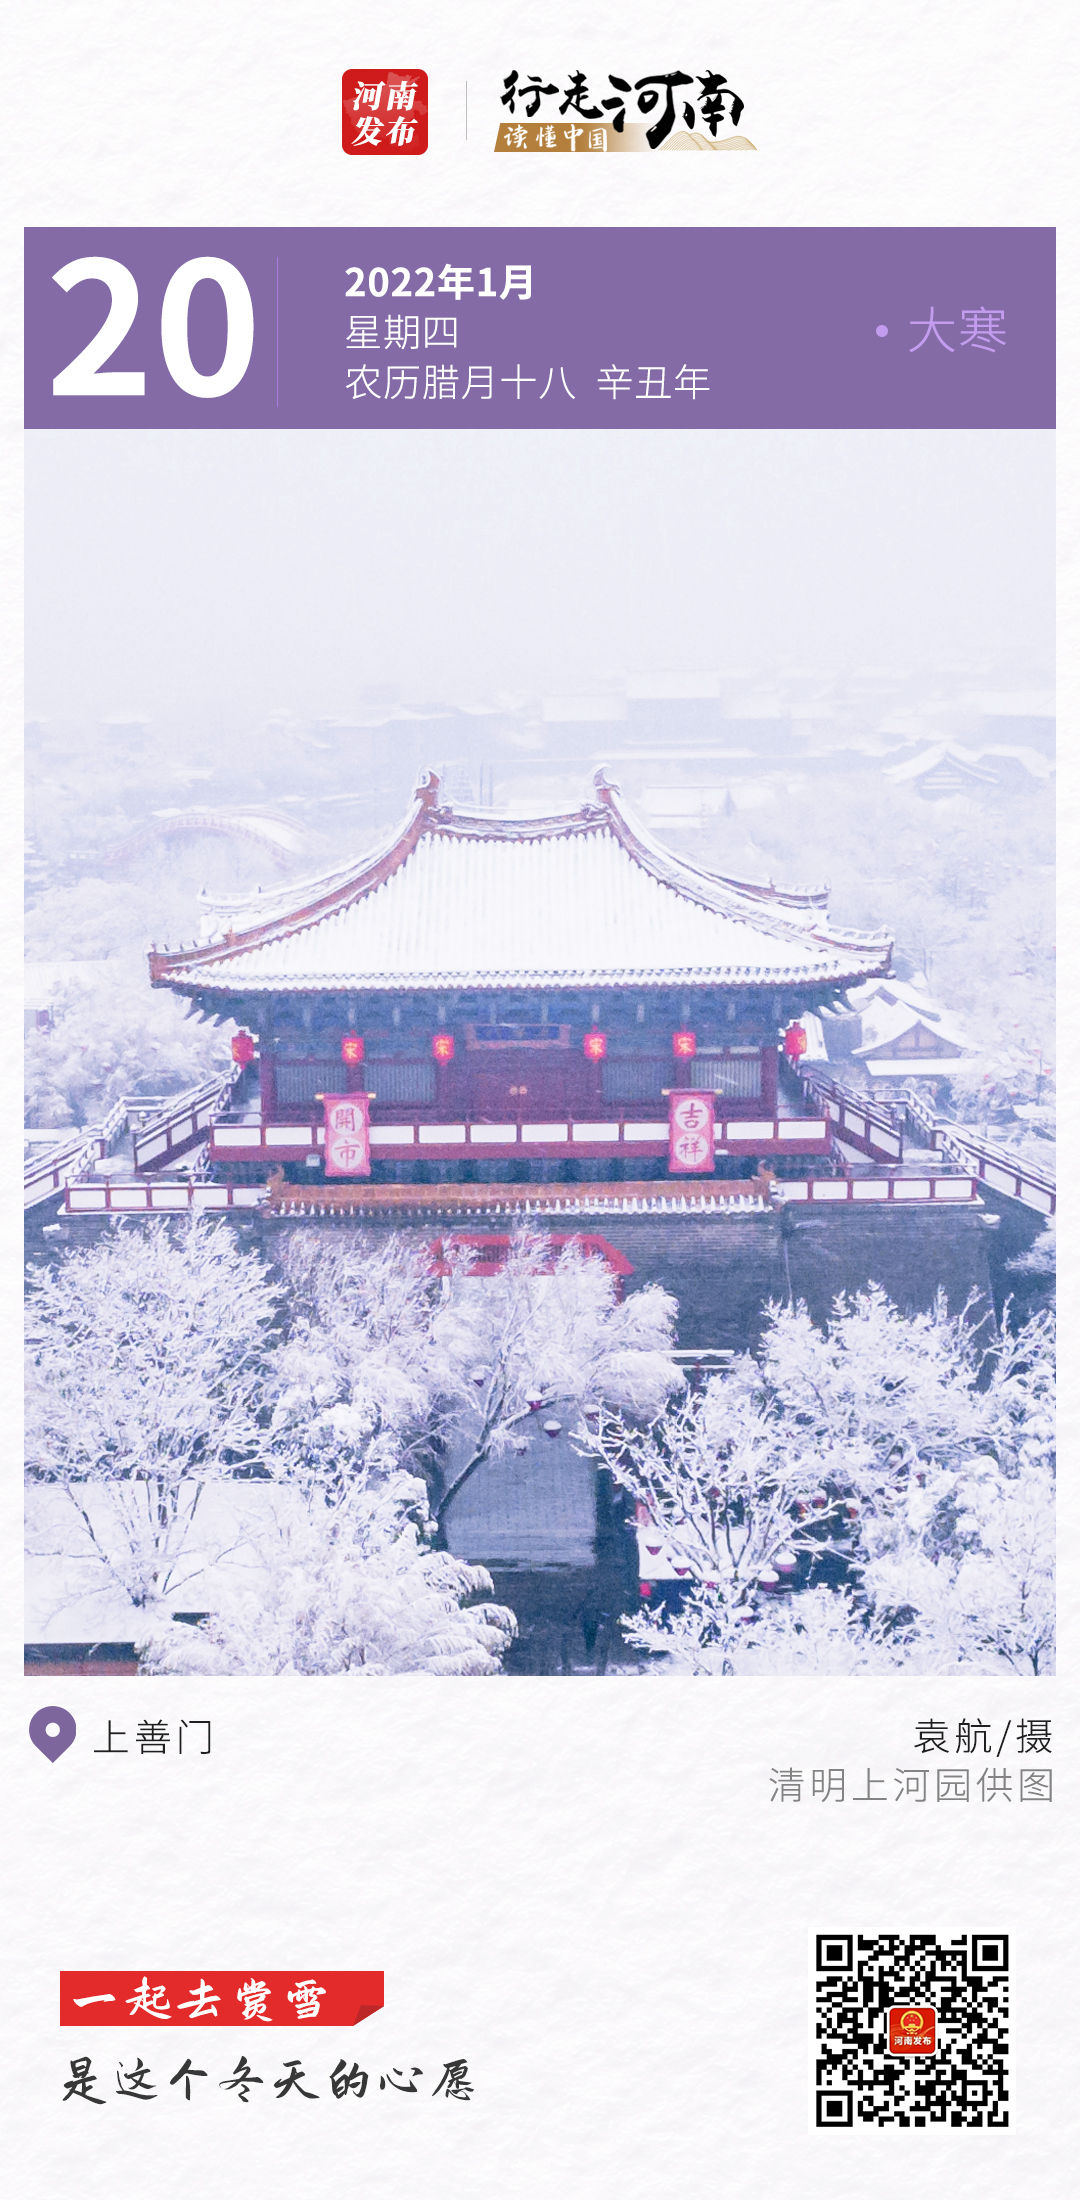 【行走河南 读懂中国】一起去赏雪，是这个冬天的心愿